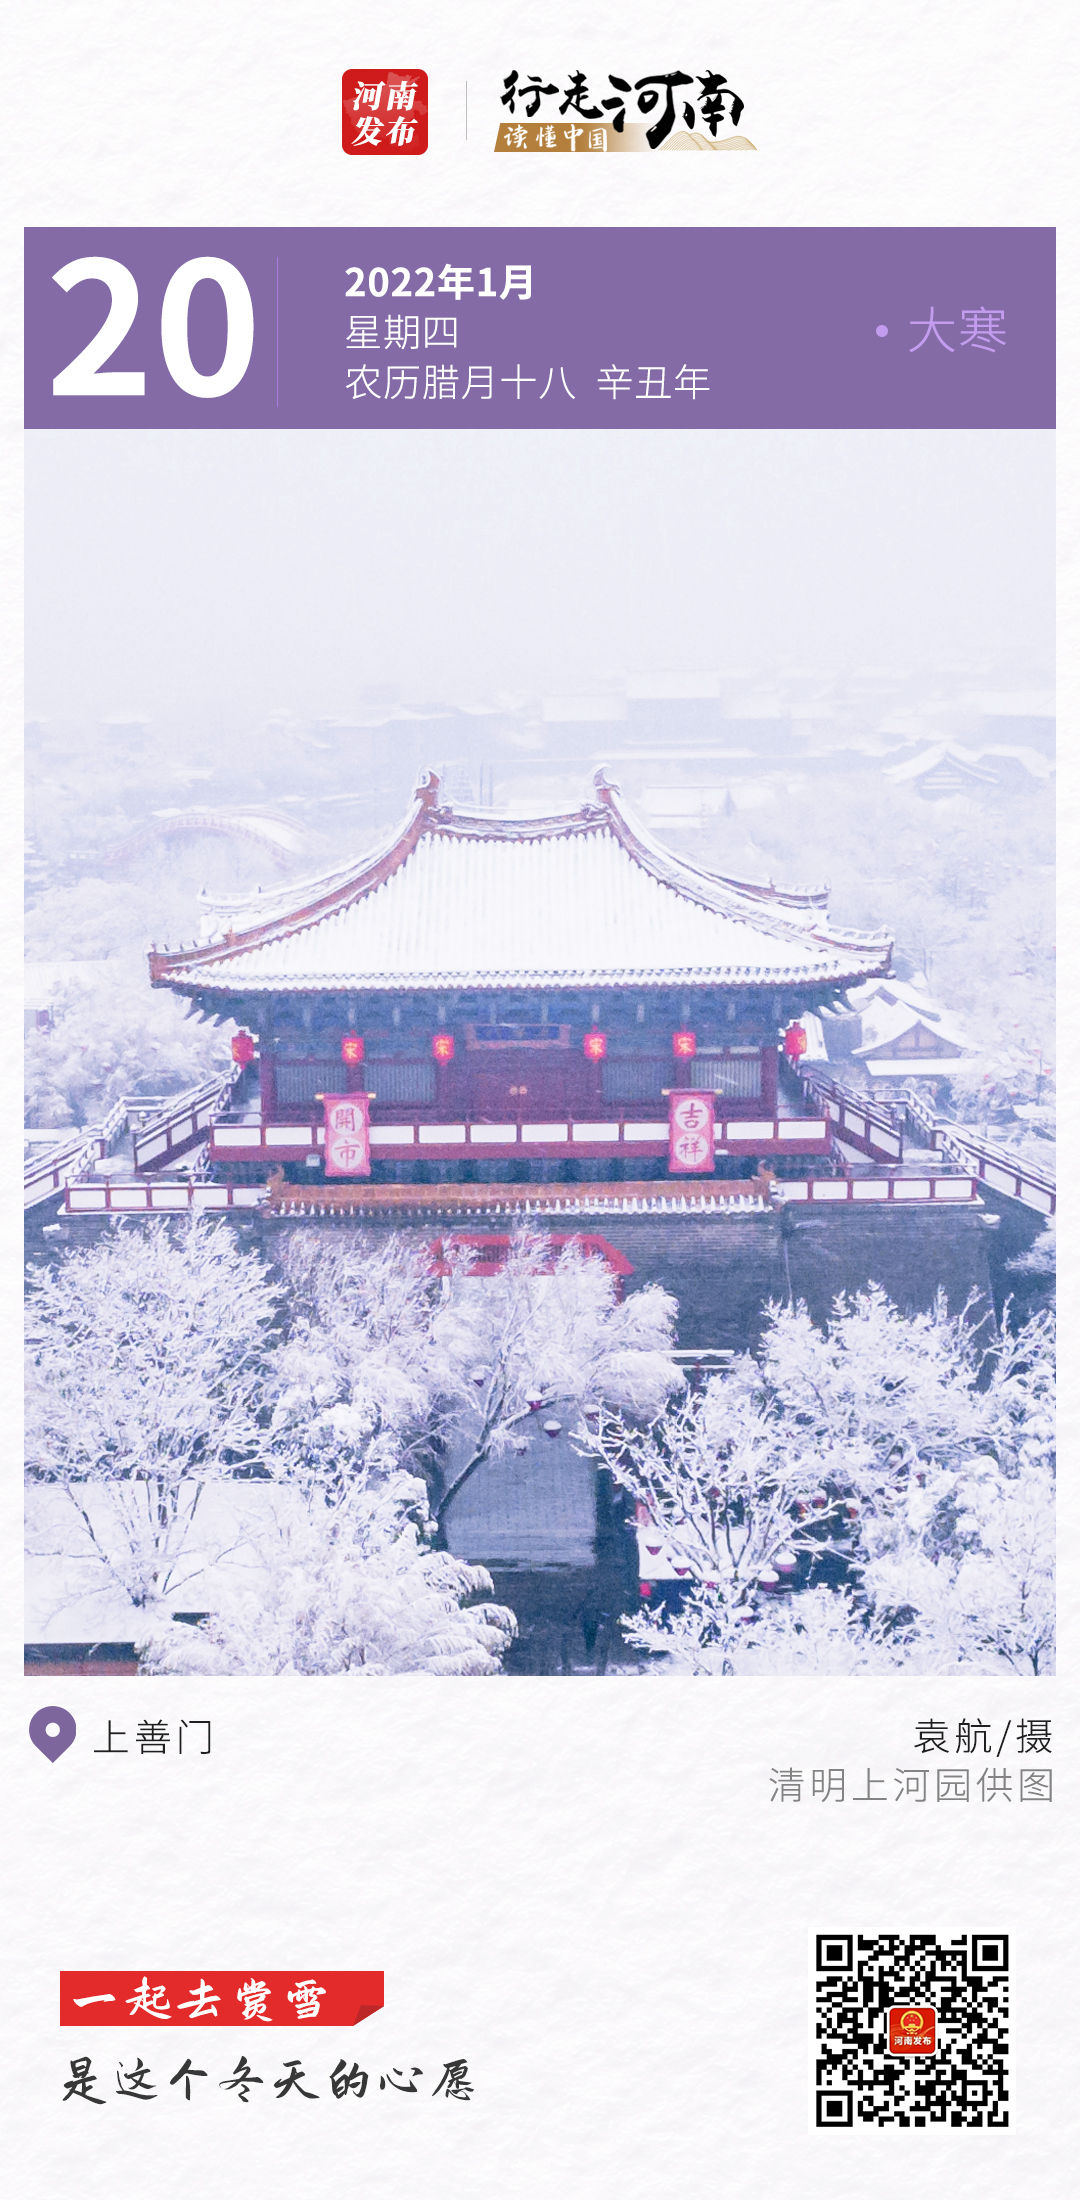 【行走河南 读懂中国】一起去赏雪，是这个冬天的心愿